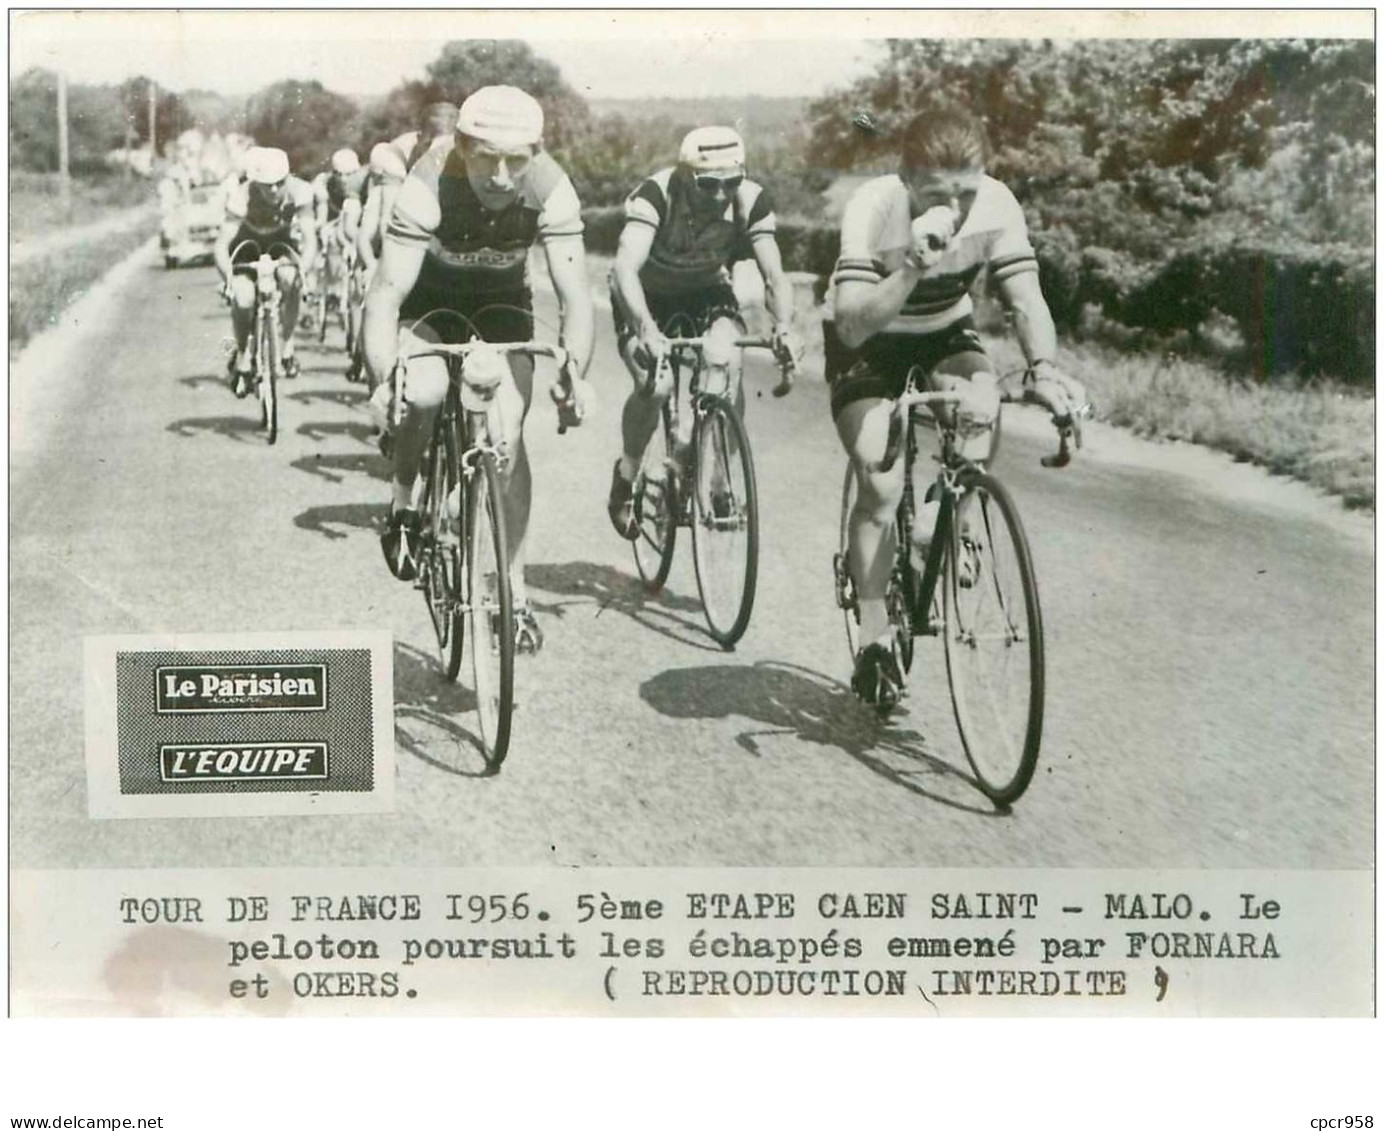 PHOTO DE PRESSE ORIGINALE TOUR DE FRANCE 1956.20X15.5eme ETAPE CAEN ST MALO.LE PELOTON ...FORNARA ET OKERS.n°18662 - Ciclismo